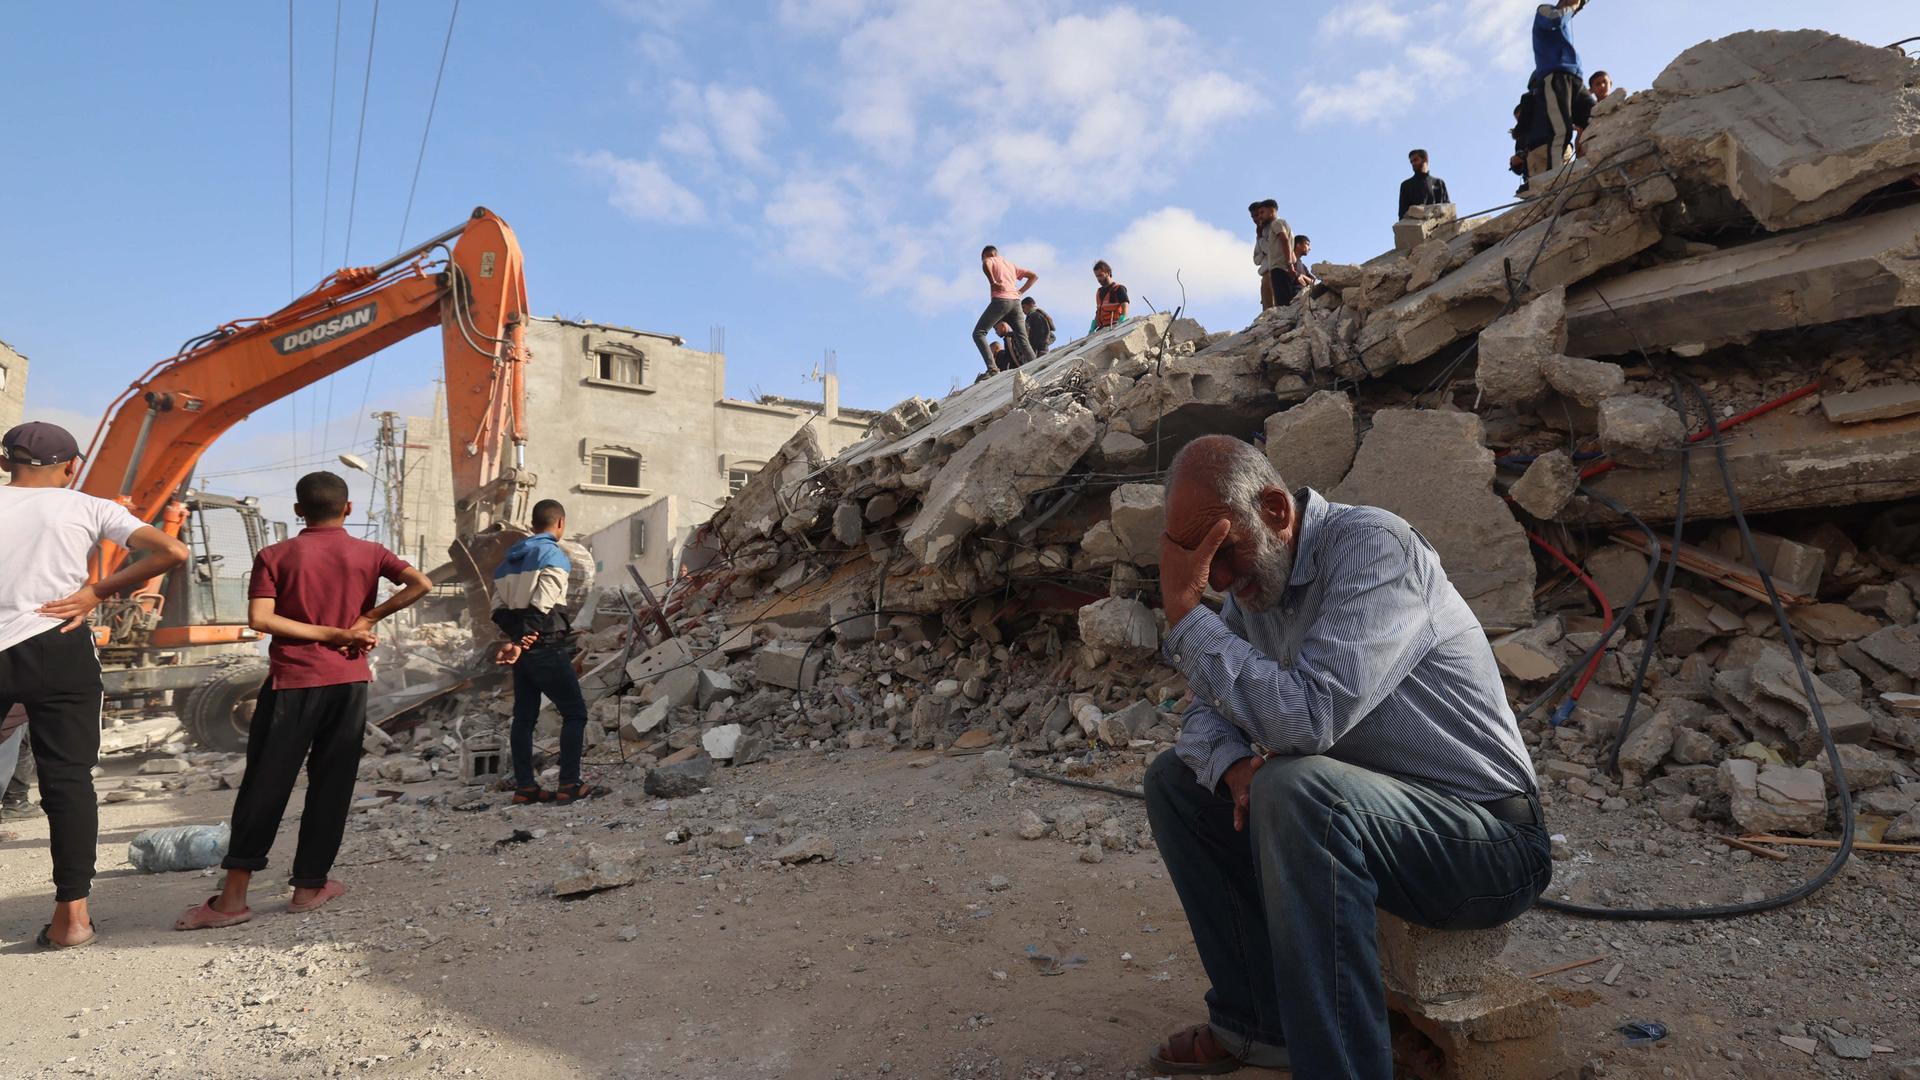 Zu sehen ist eine Szene in der Stadt Rafah im Gaza-Streifen. Ein Bagger räumt Trümmer nach einem Angriff weg. Ein Mann sitzt im Vordergrund und trauert.